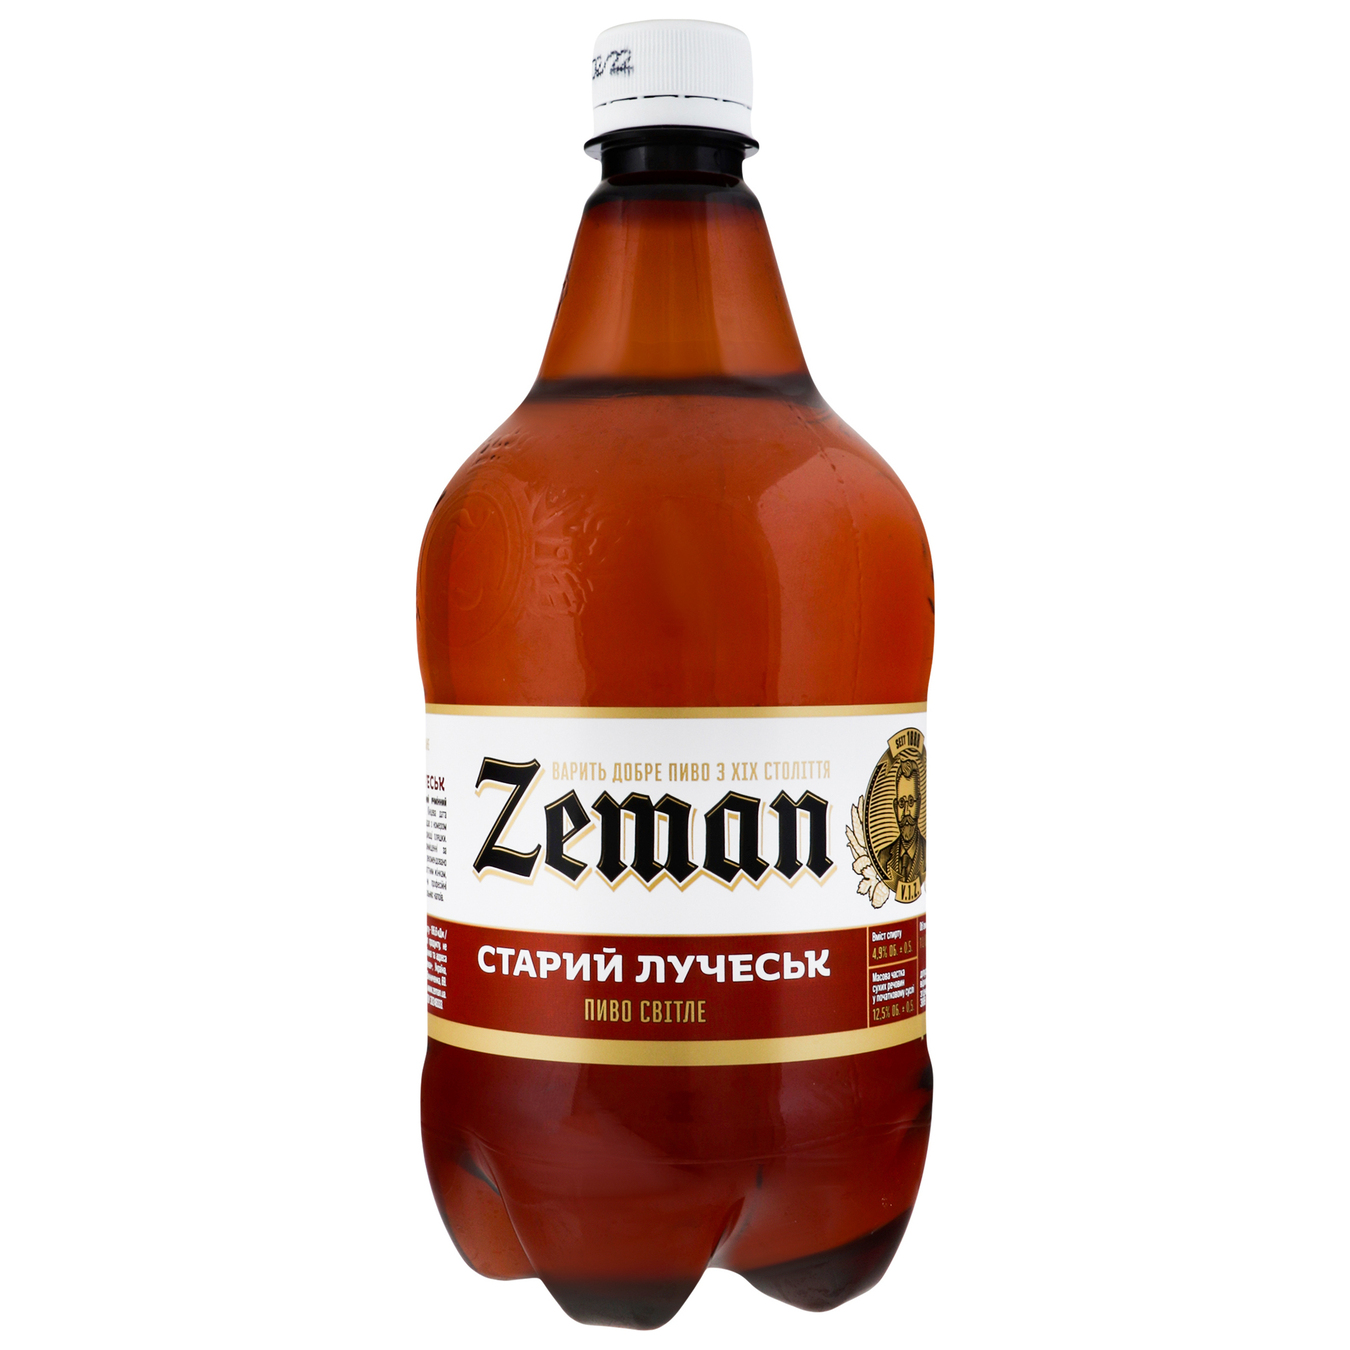 Light beer Zeman Stary Luchesk 4.9% 1 liter plastic bottle 4